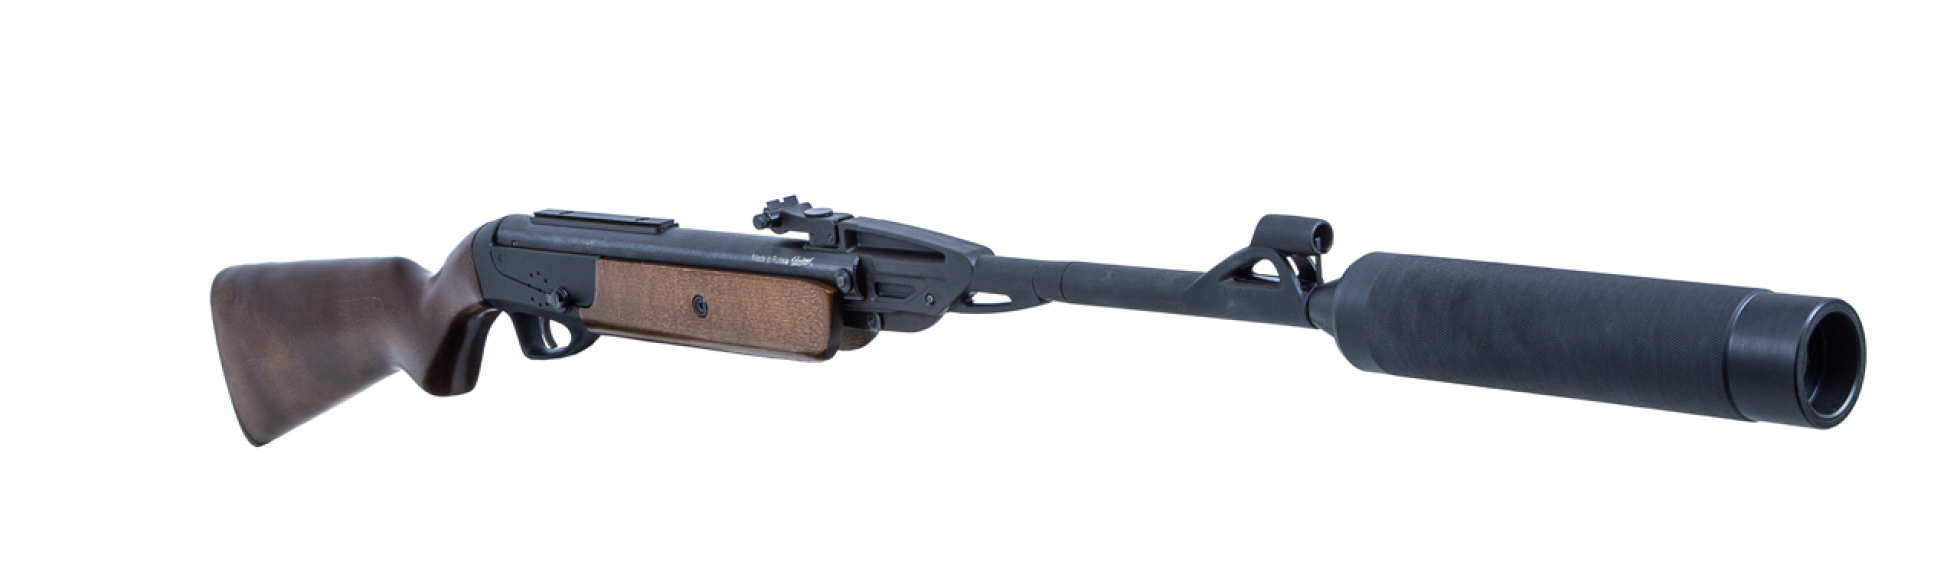 Снайперская винтовка МР-512W «СНАЙПЕР» серии «PRACTICAL» - фото 1